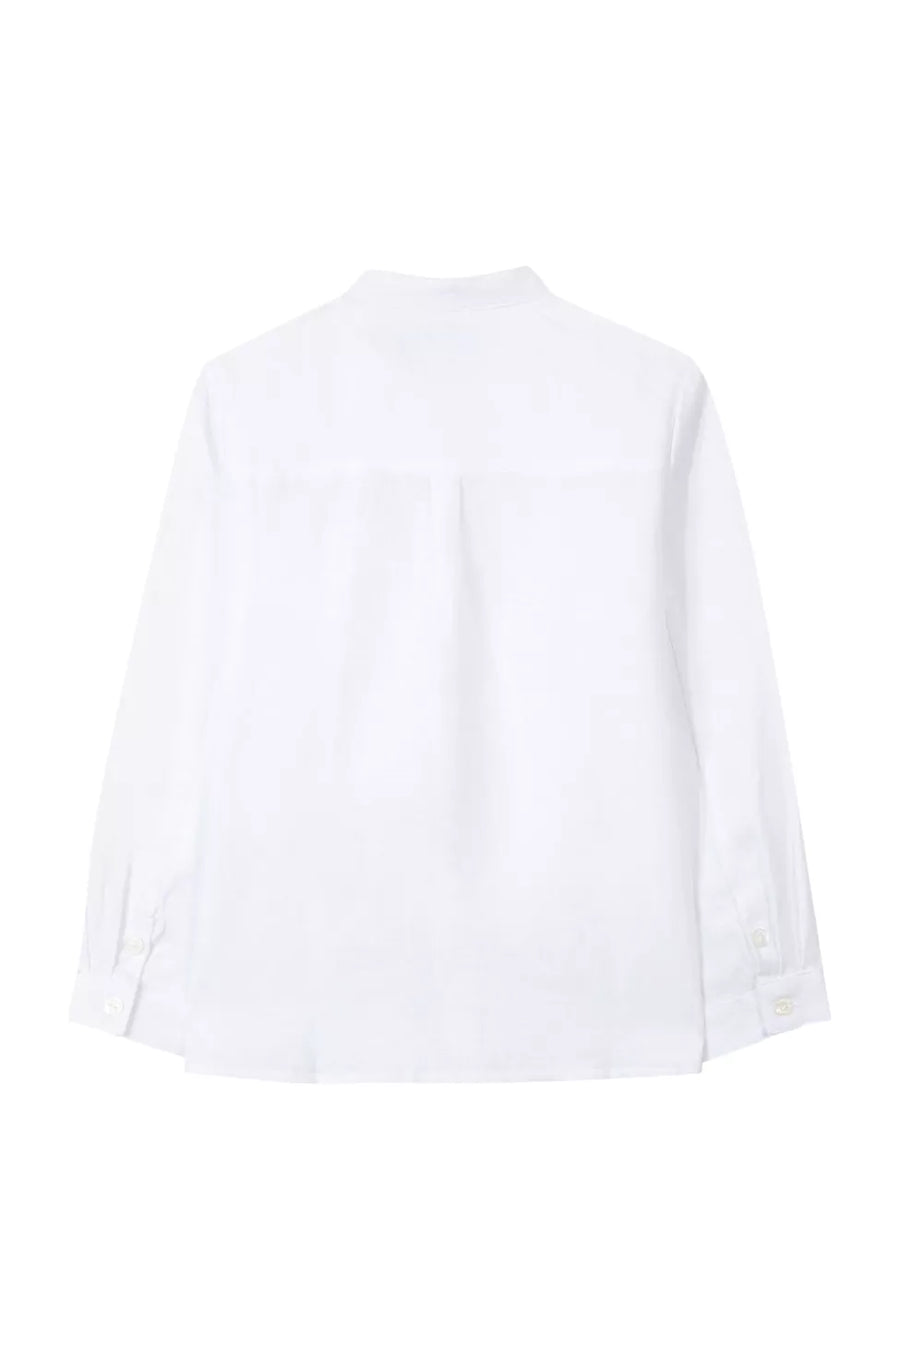 White shirt by Tartine Et Chocolat